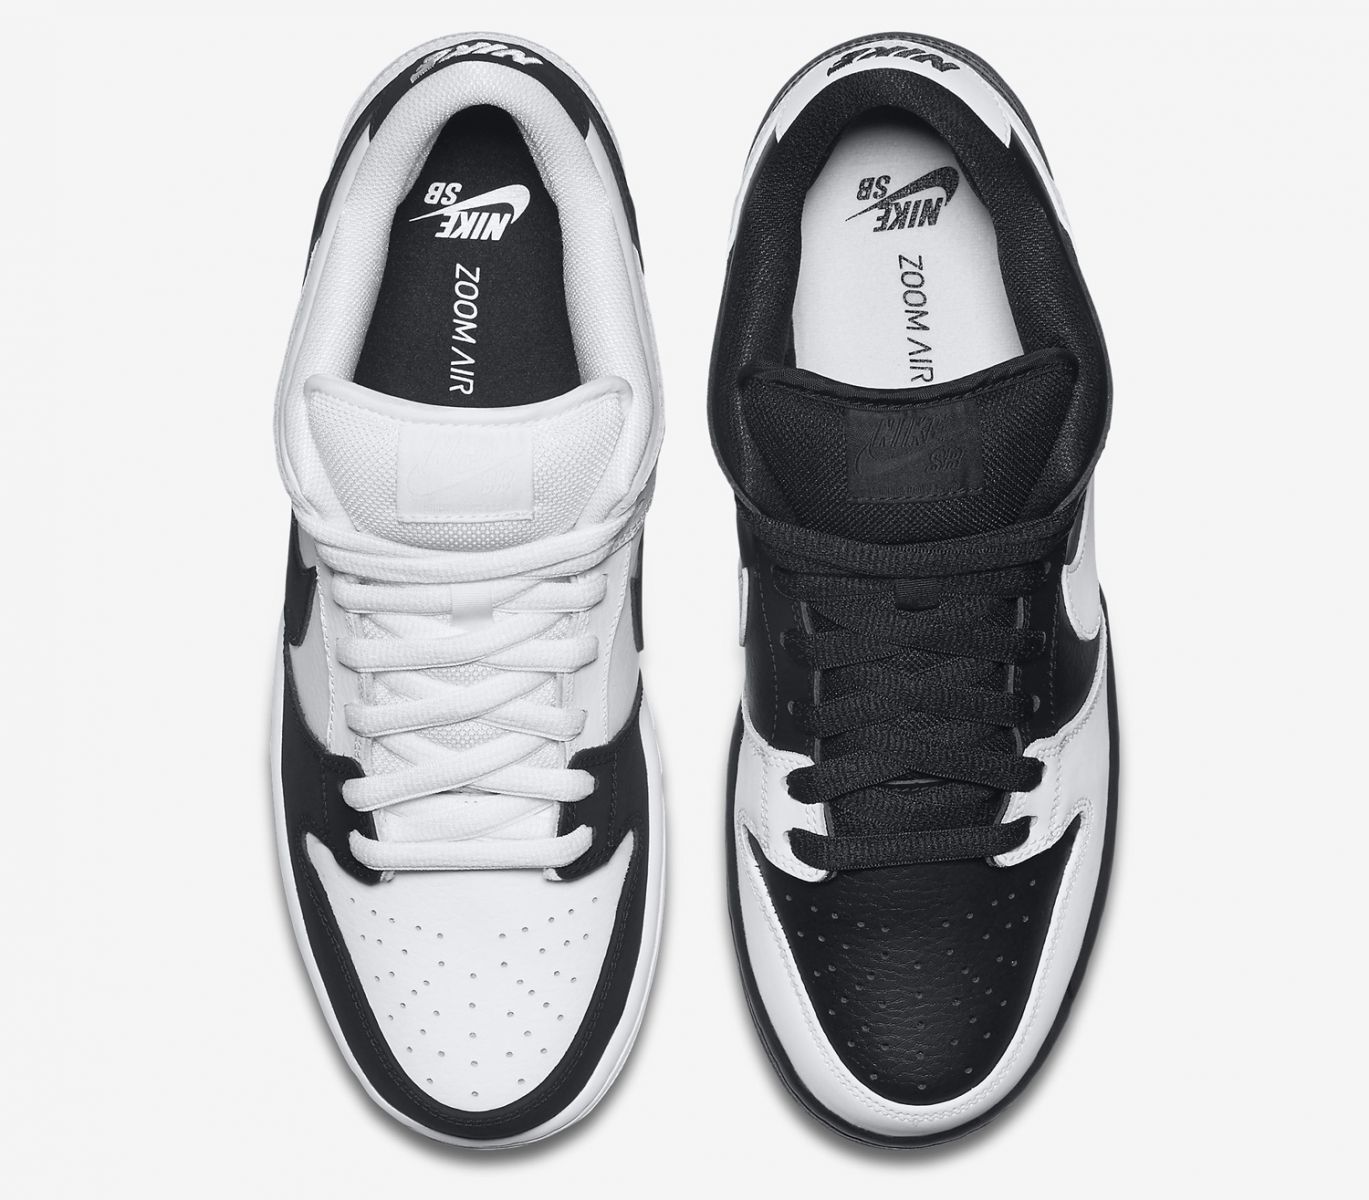 Nike SB Dunk Low Yin Yang - Sneaker Bar Detroit1369 x 1200